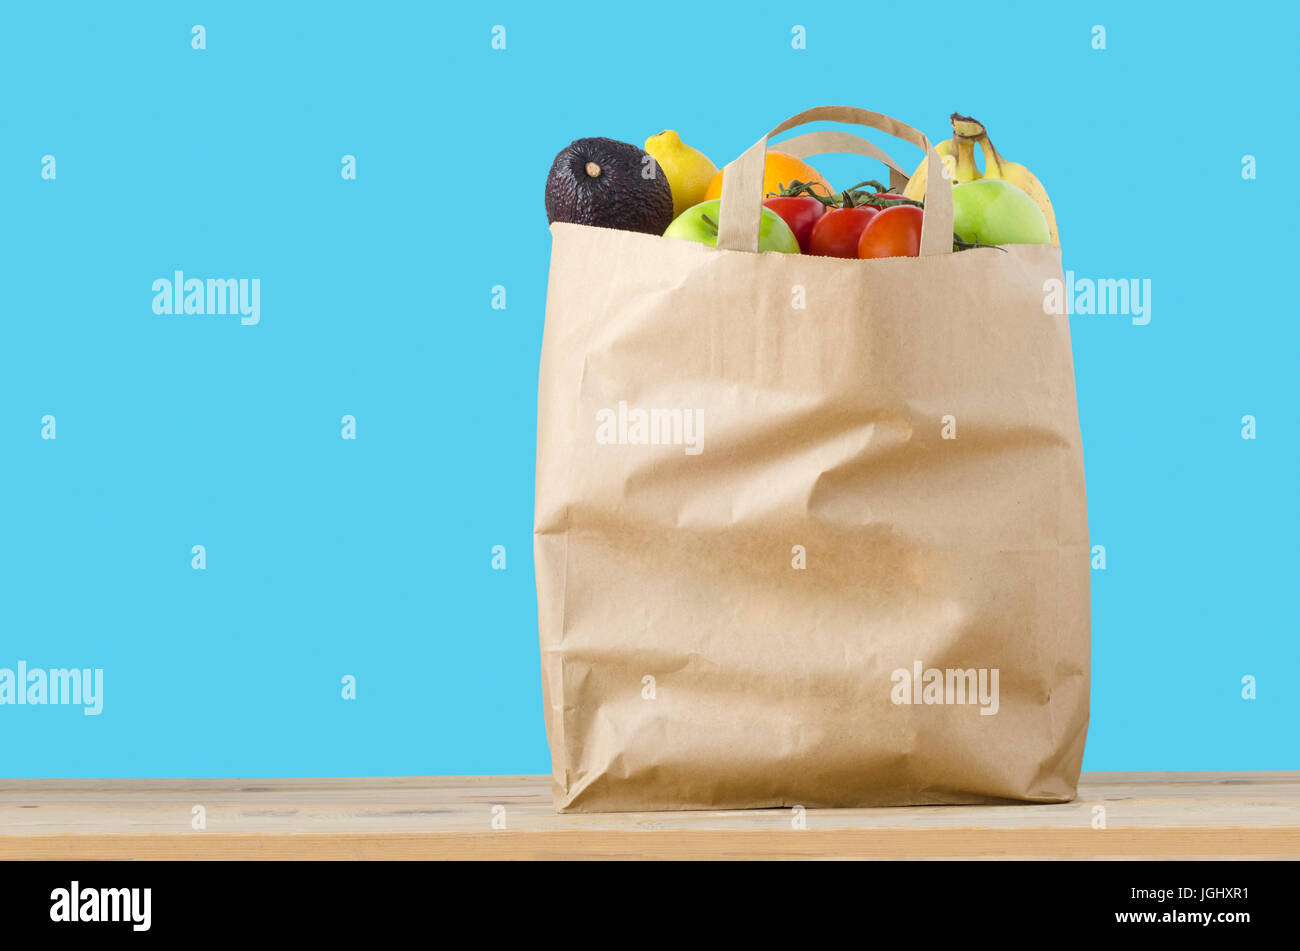 Un sac en papier brun, rempli à ras bord avec des variétés de fruits, sur une surface en bois clair. Isolé sur un fond bleu turquoise. Banque D'Images